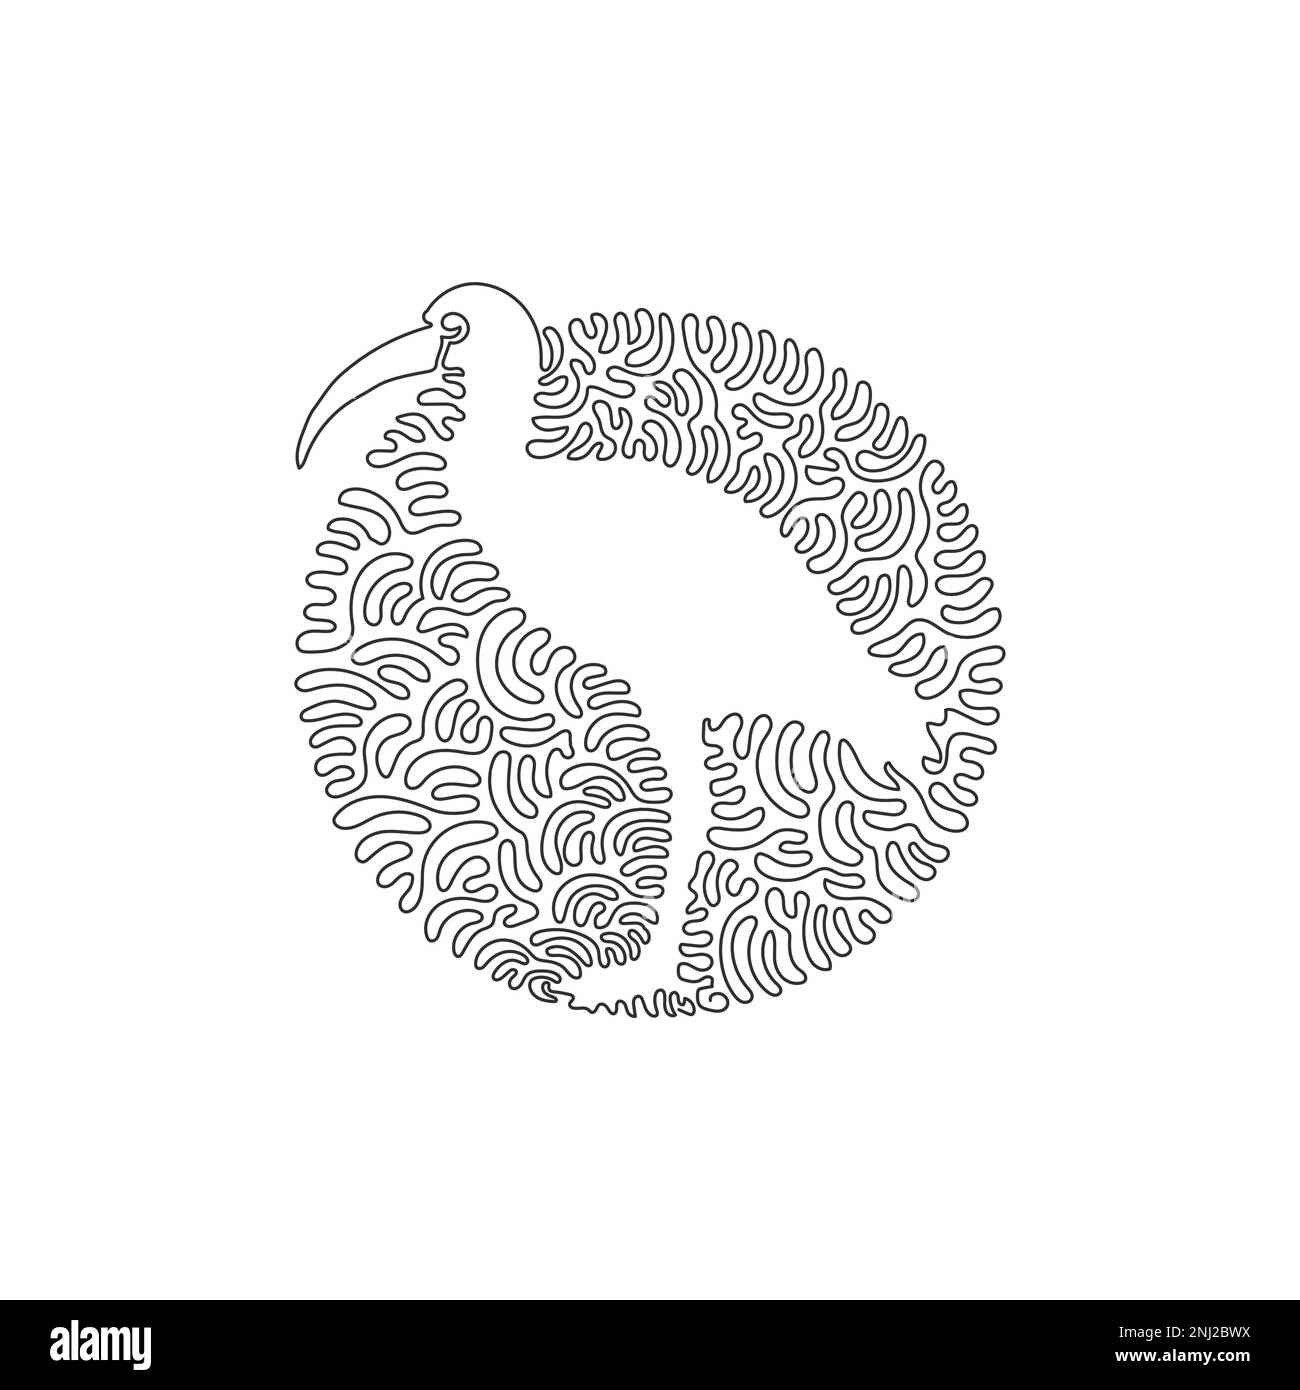 Einfach geschwungene, durchgehende Linienzeichnung süßer Ibisen abstrakter Kunst. Durchgehende Linienzeichnung des Entwurfsvektors zur Darstellung großer Watvögel Stock Vektor